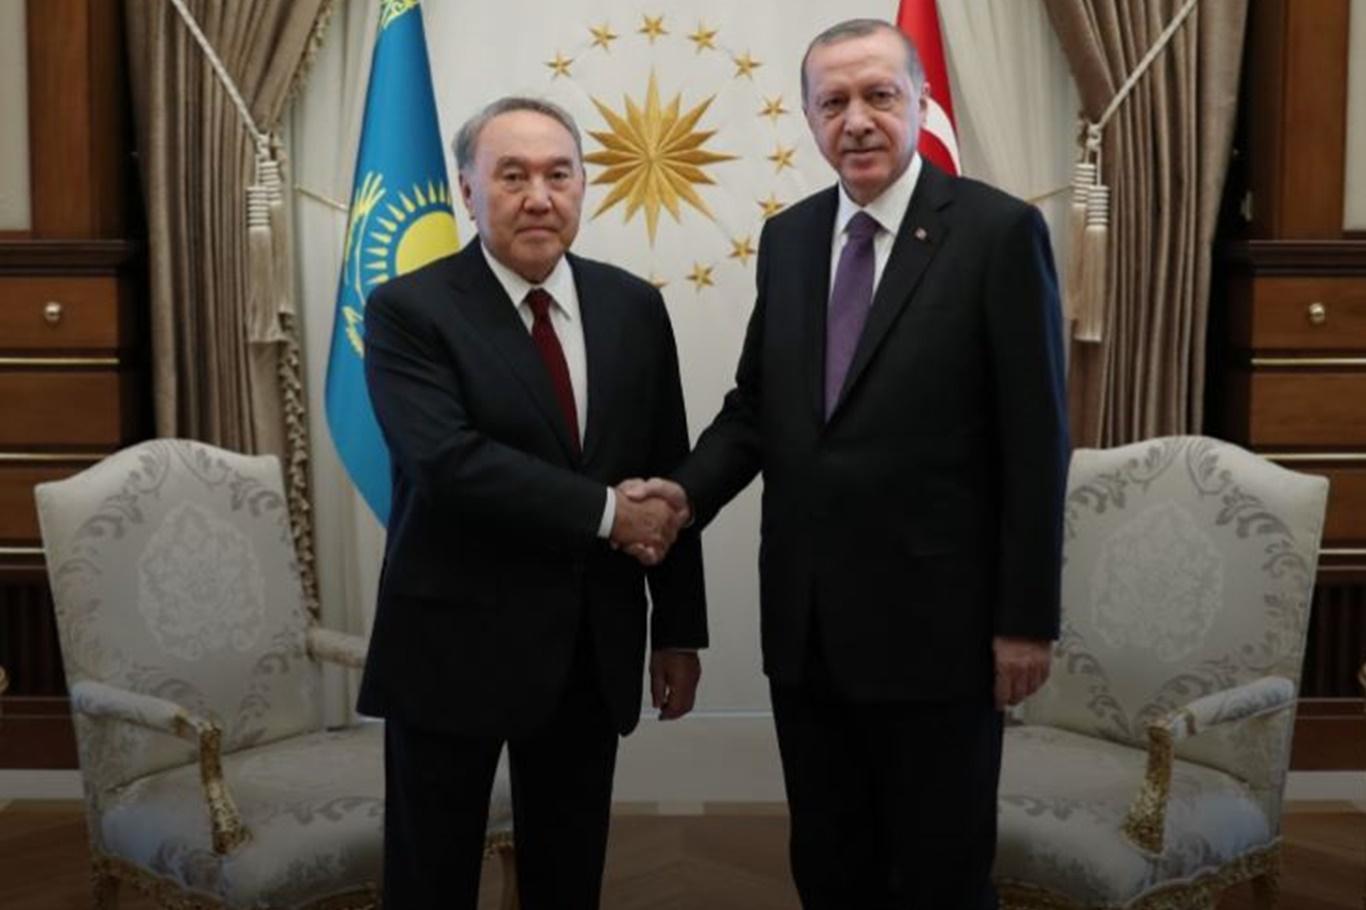 Cumhurbaşkanı Erdoğan, Kazakistan’ın kurucu Cumhurbaşkanı Nazarbayev ile telefonda görüştü